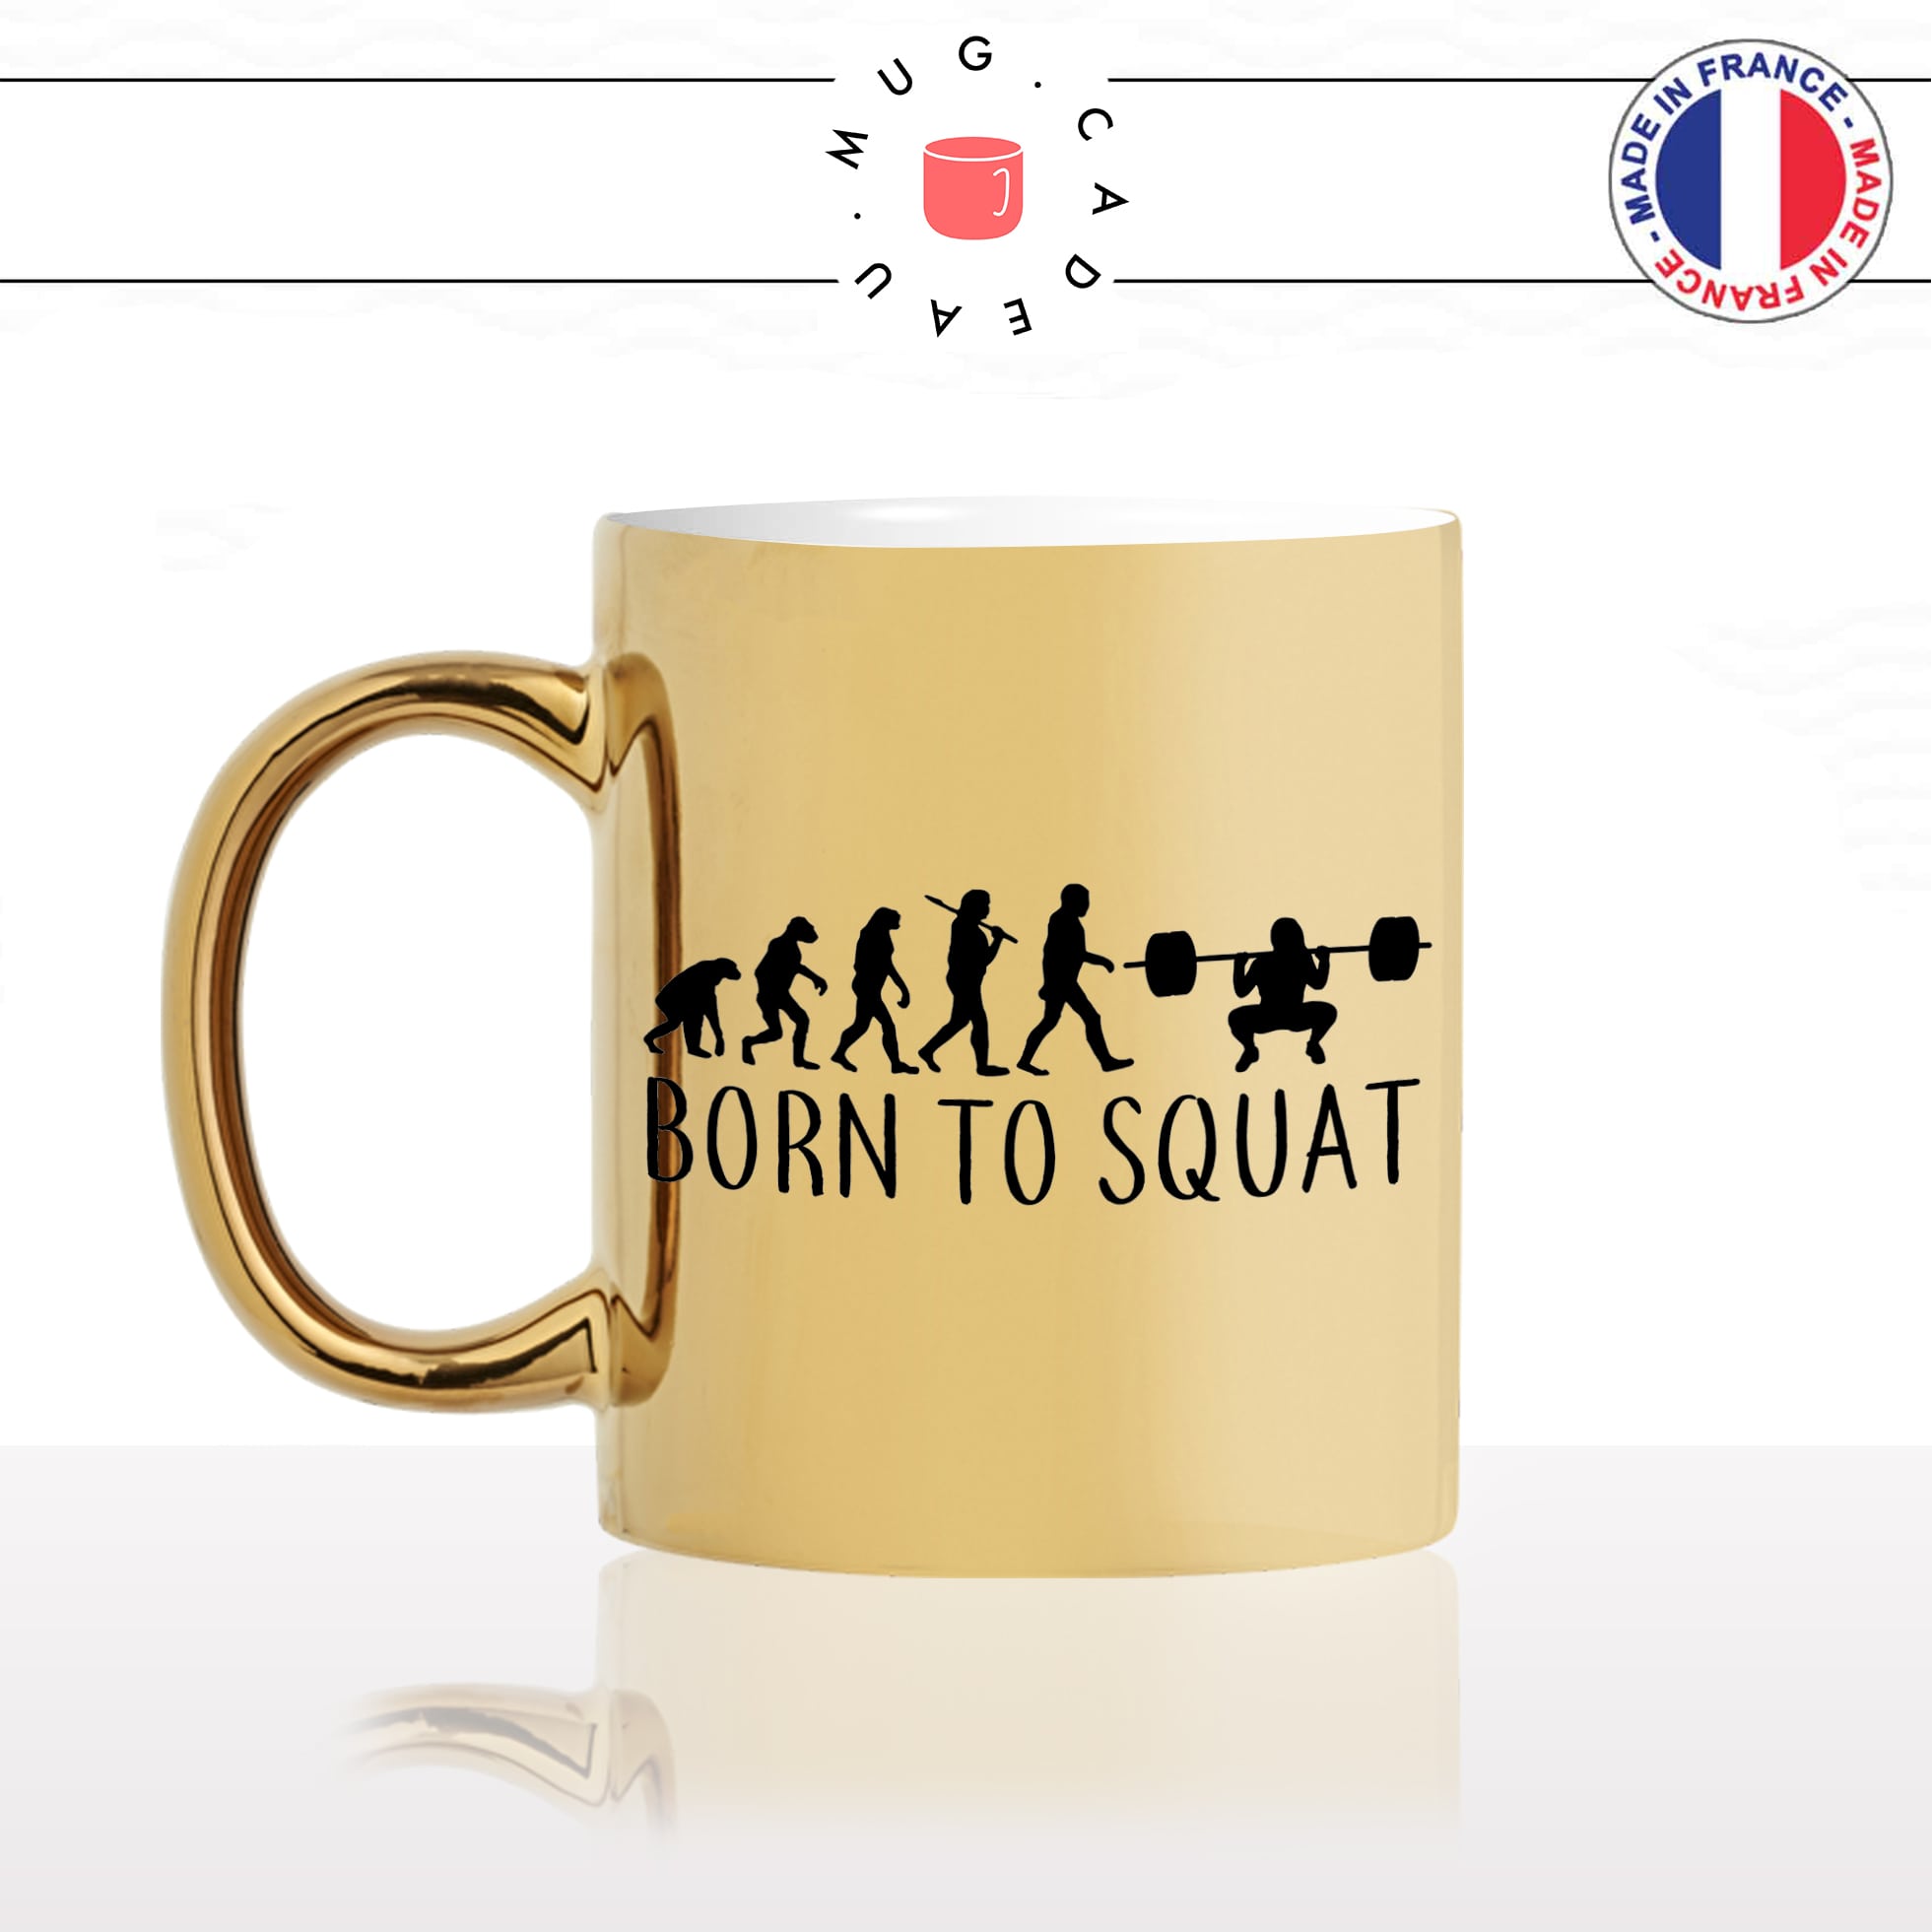 mug-tasse-or-doré-gold-born-to-squat-fitness-femme-jambe-salle-de-sport-evolution-humaine-cool-idée-cadeau-fun-café-thé-personnalisé-min